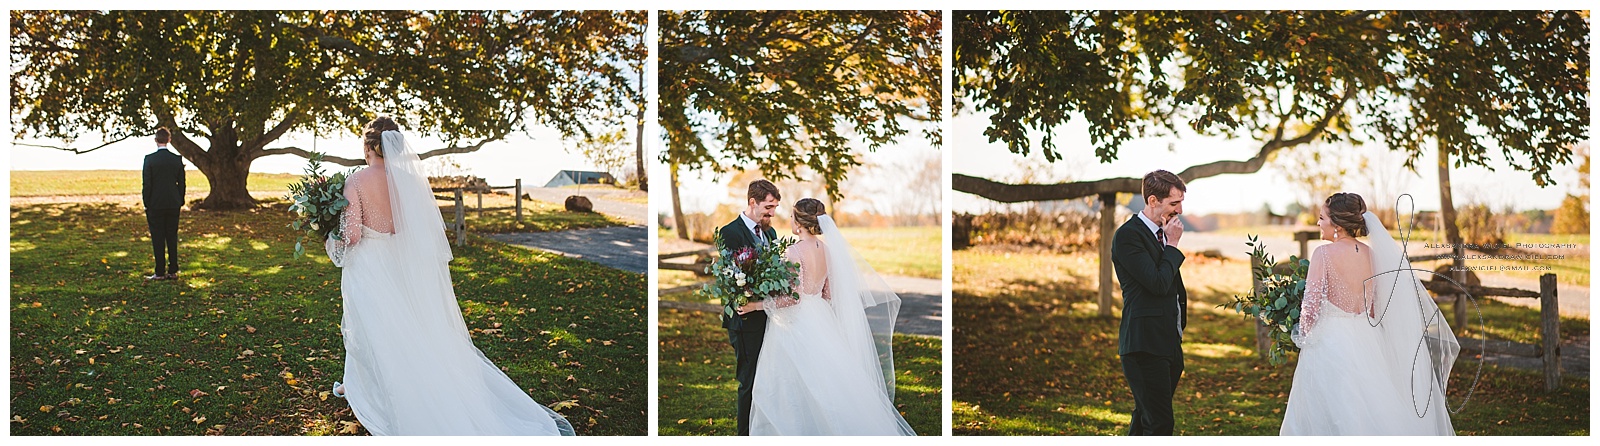 Backyard-Maine-Wedding-12.jpg